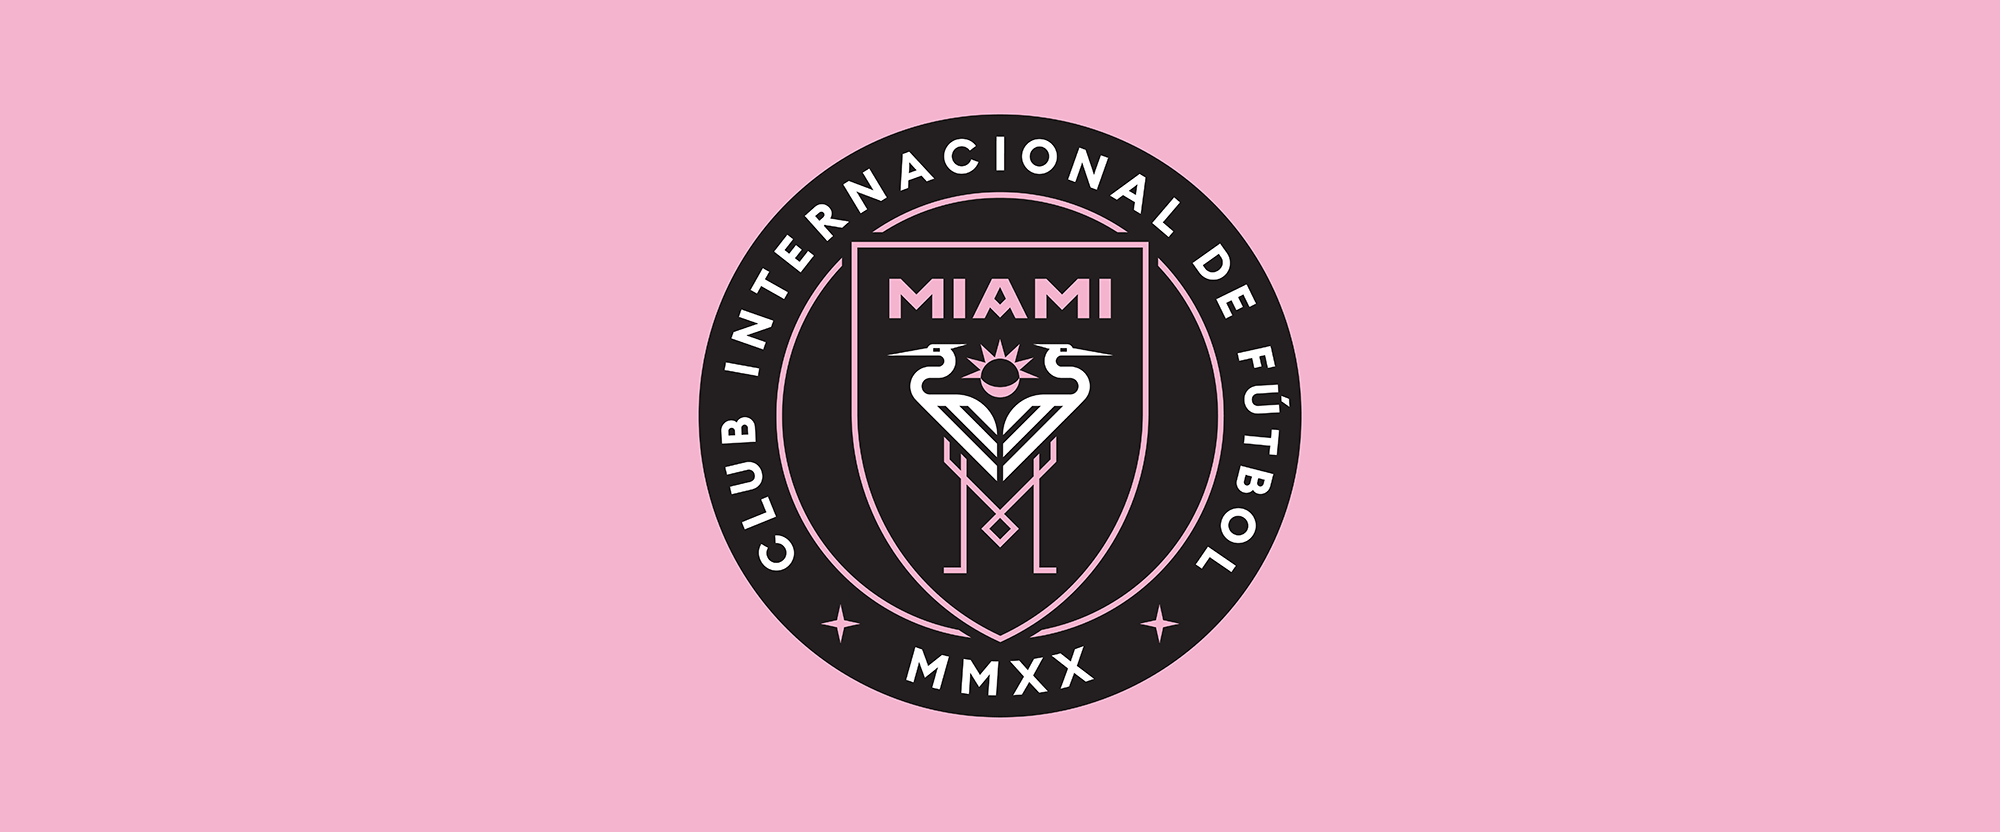 Miami Logo - Brand New: New Logo for Club Internacional de Fútbol Miami by ...